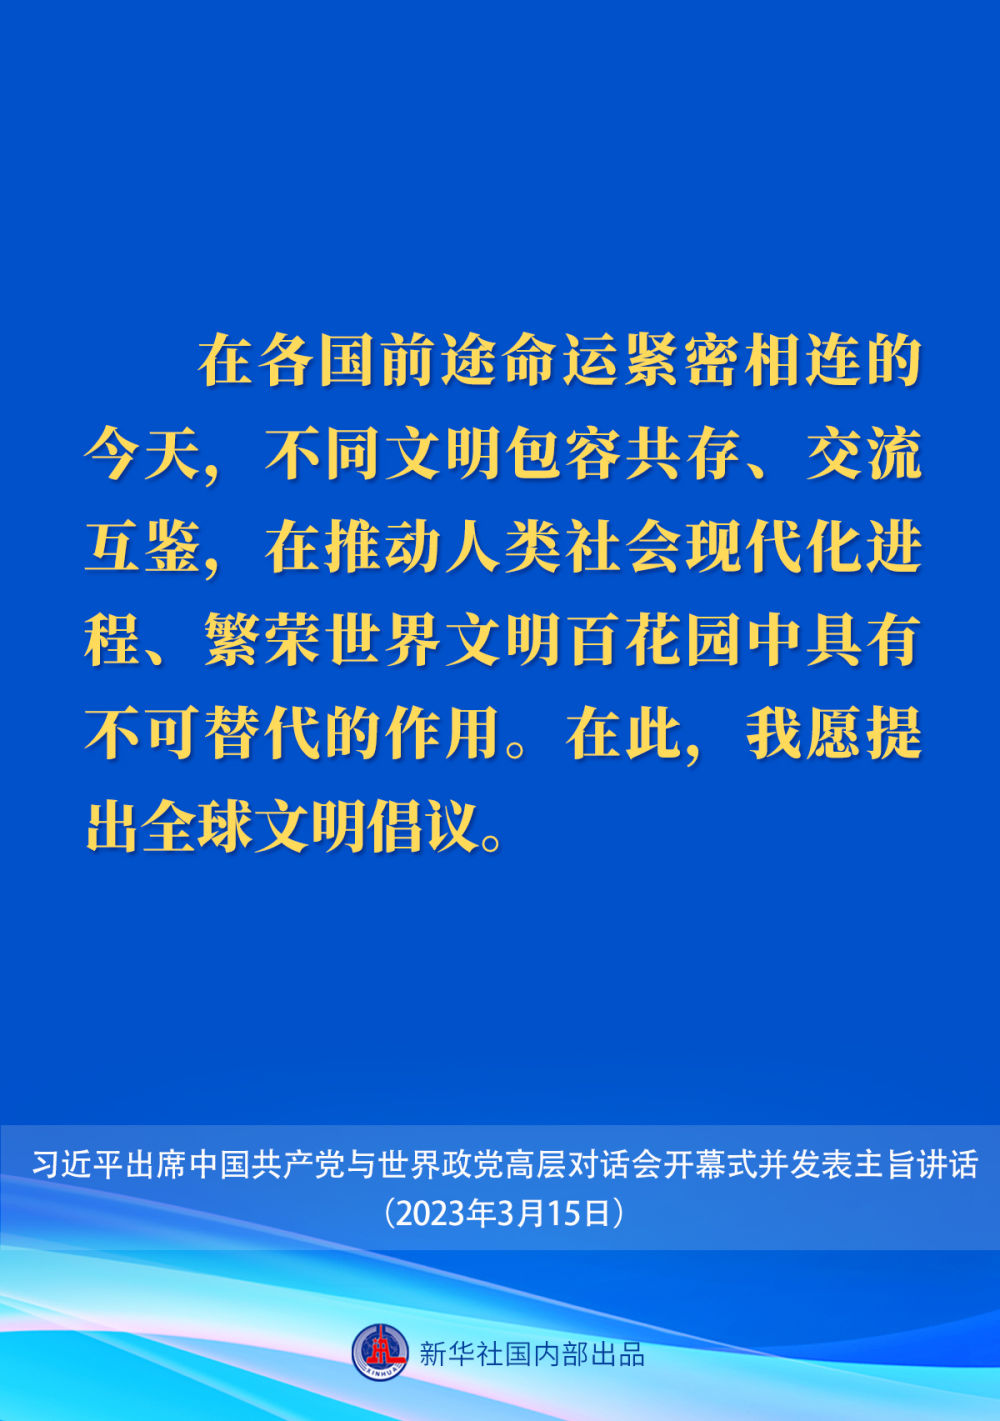 习近平在中国共产党与世界政党高层对话会上的主旨讲话要点7.jpeg